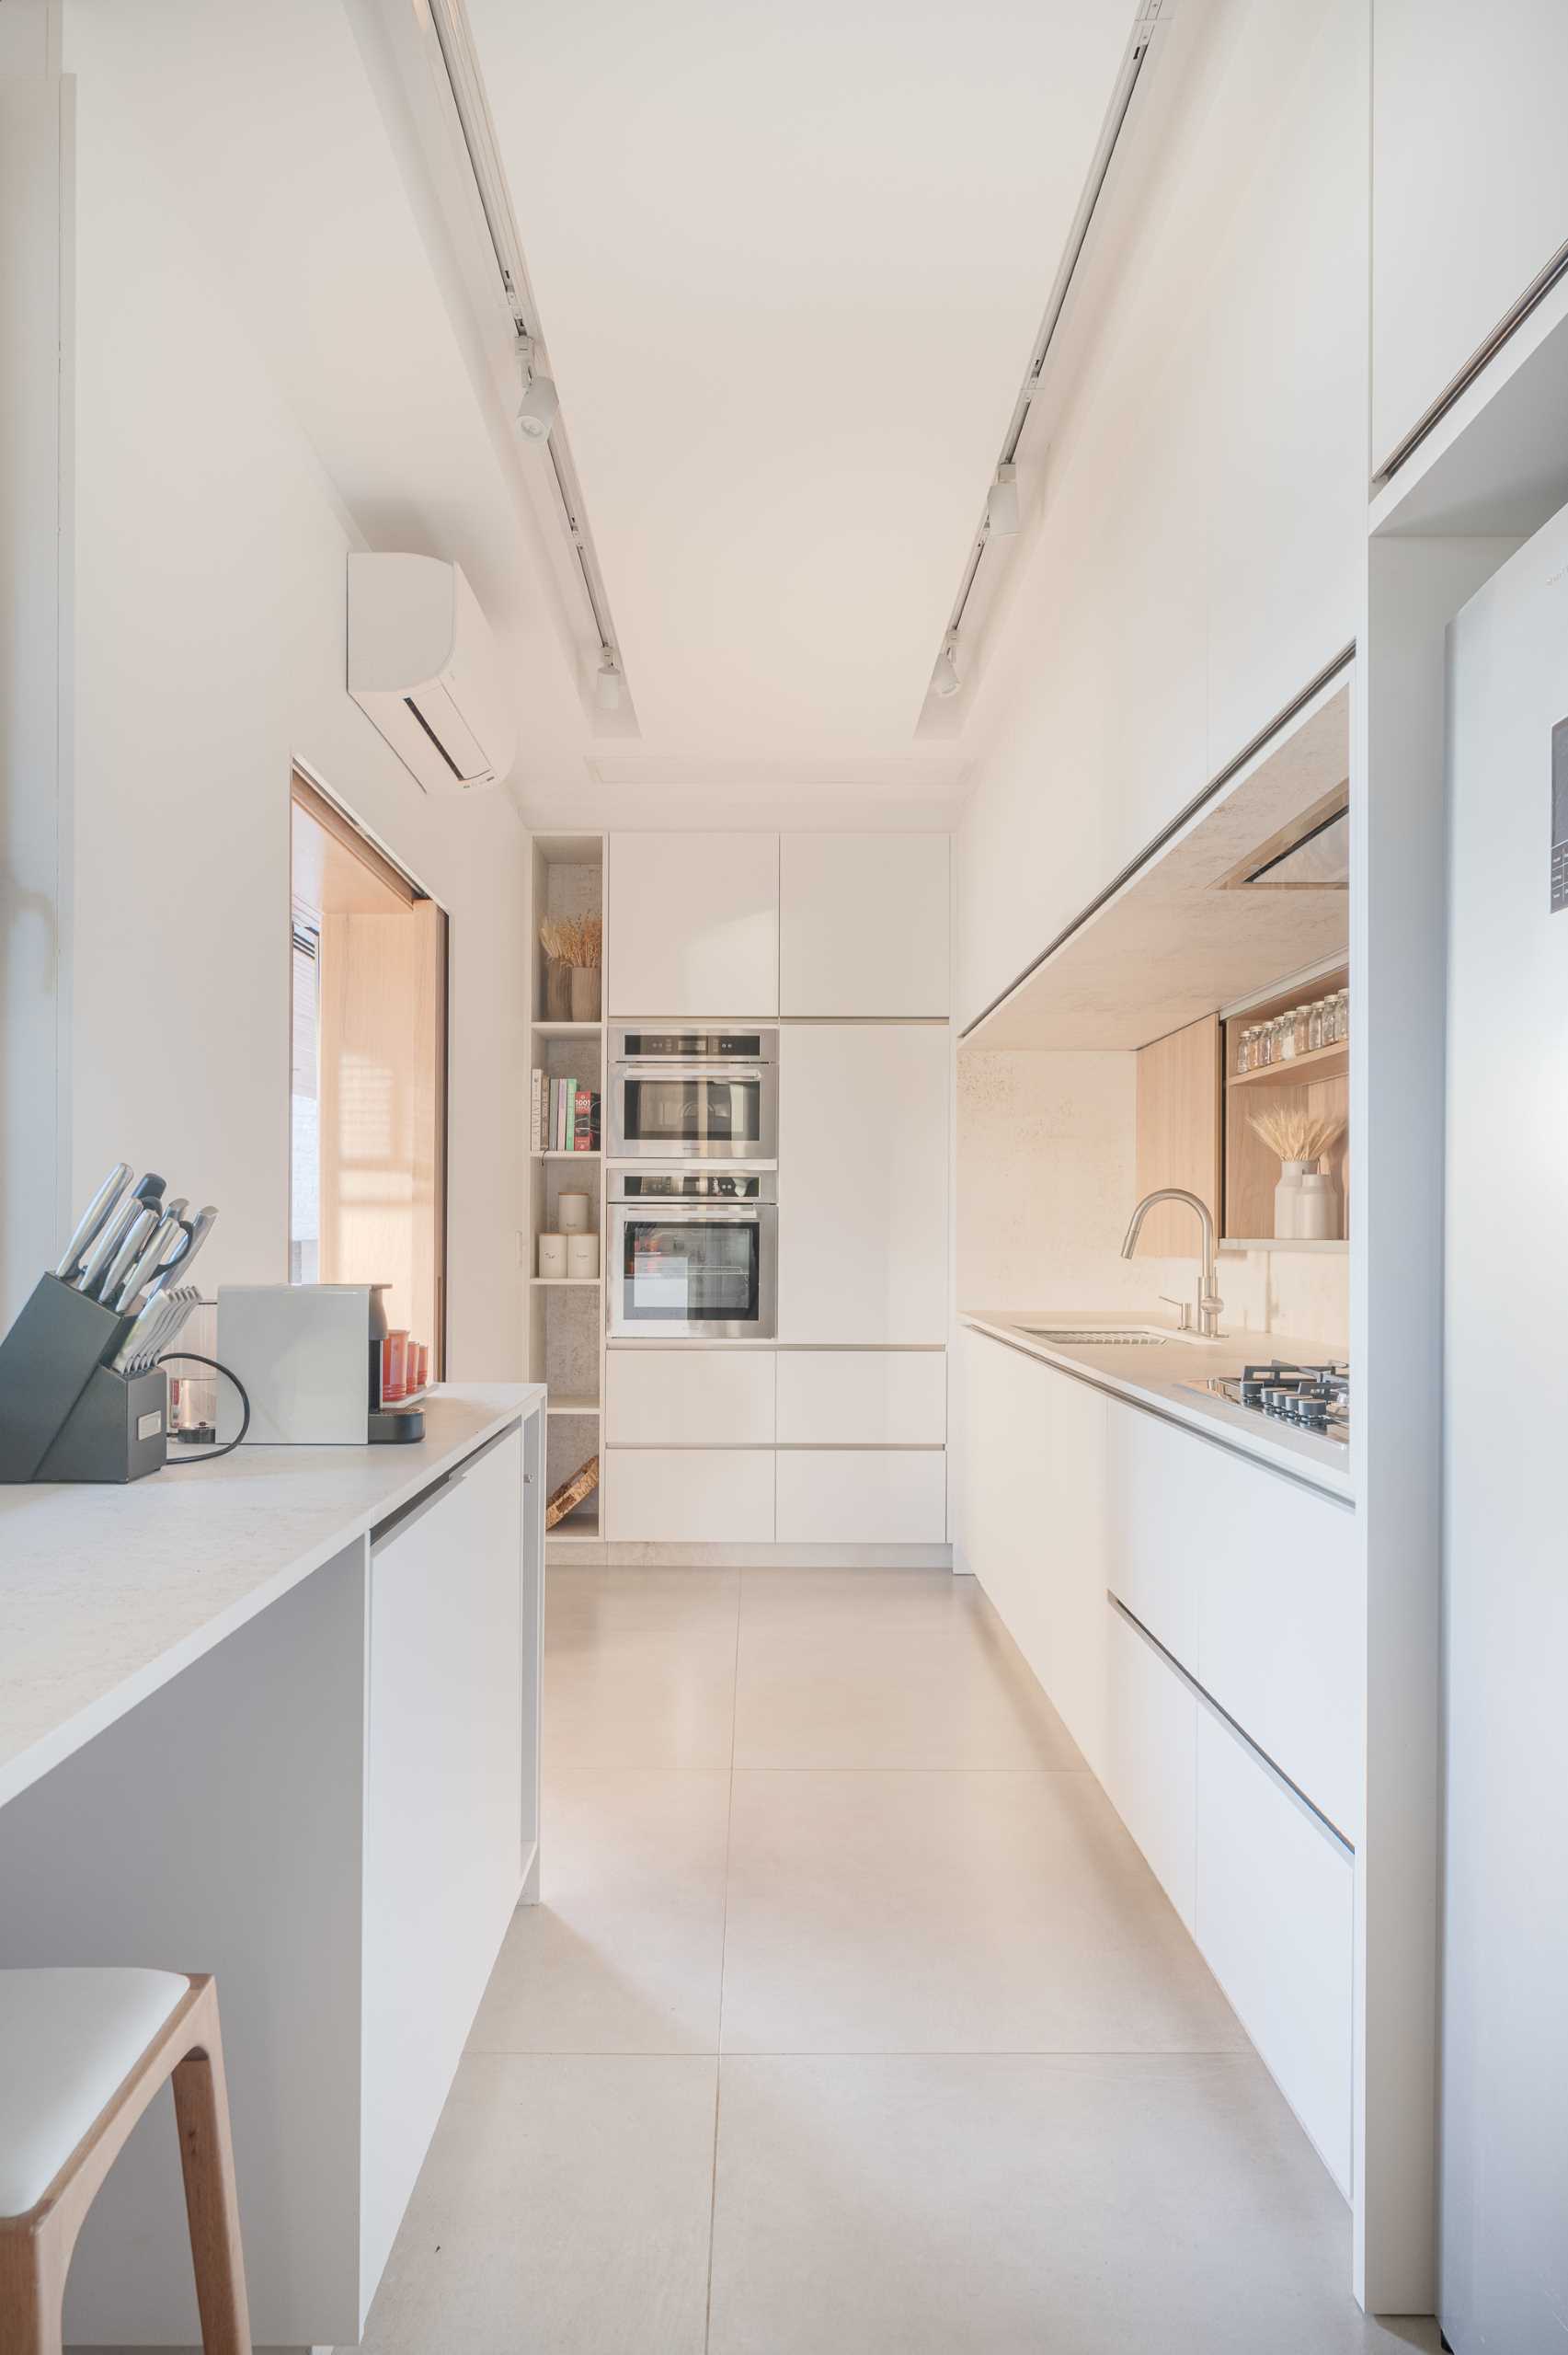 یک آشپزخانه آماده مدرن با فضای انباری فراوان.